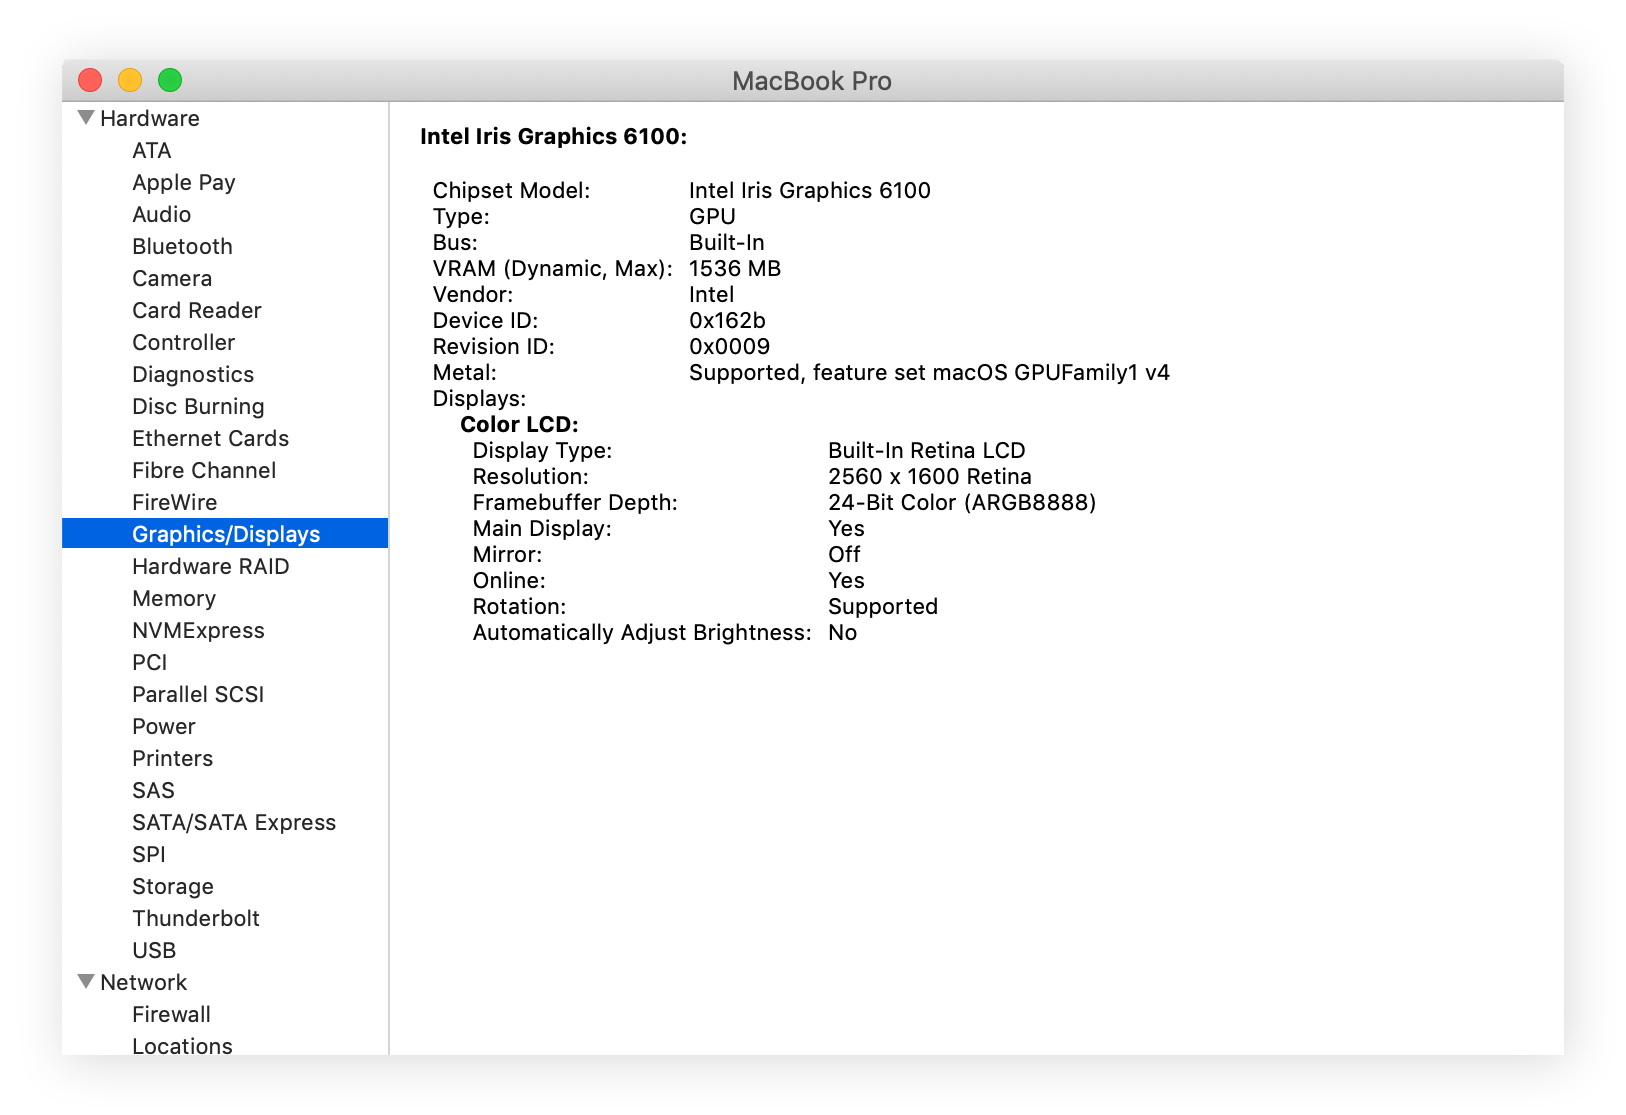 Consultar más detalles sobre la tarjeta gráfica en el Informe del sistema desde Acerca de este Mac.